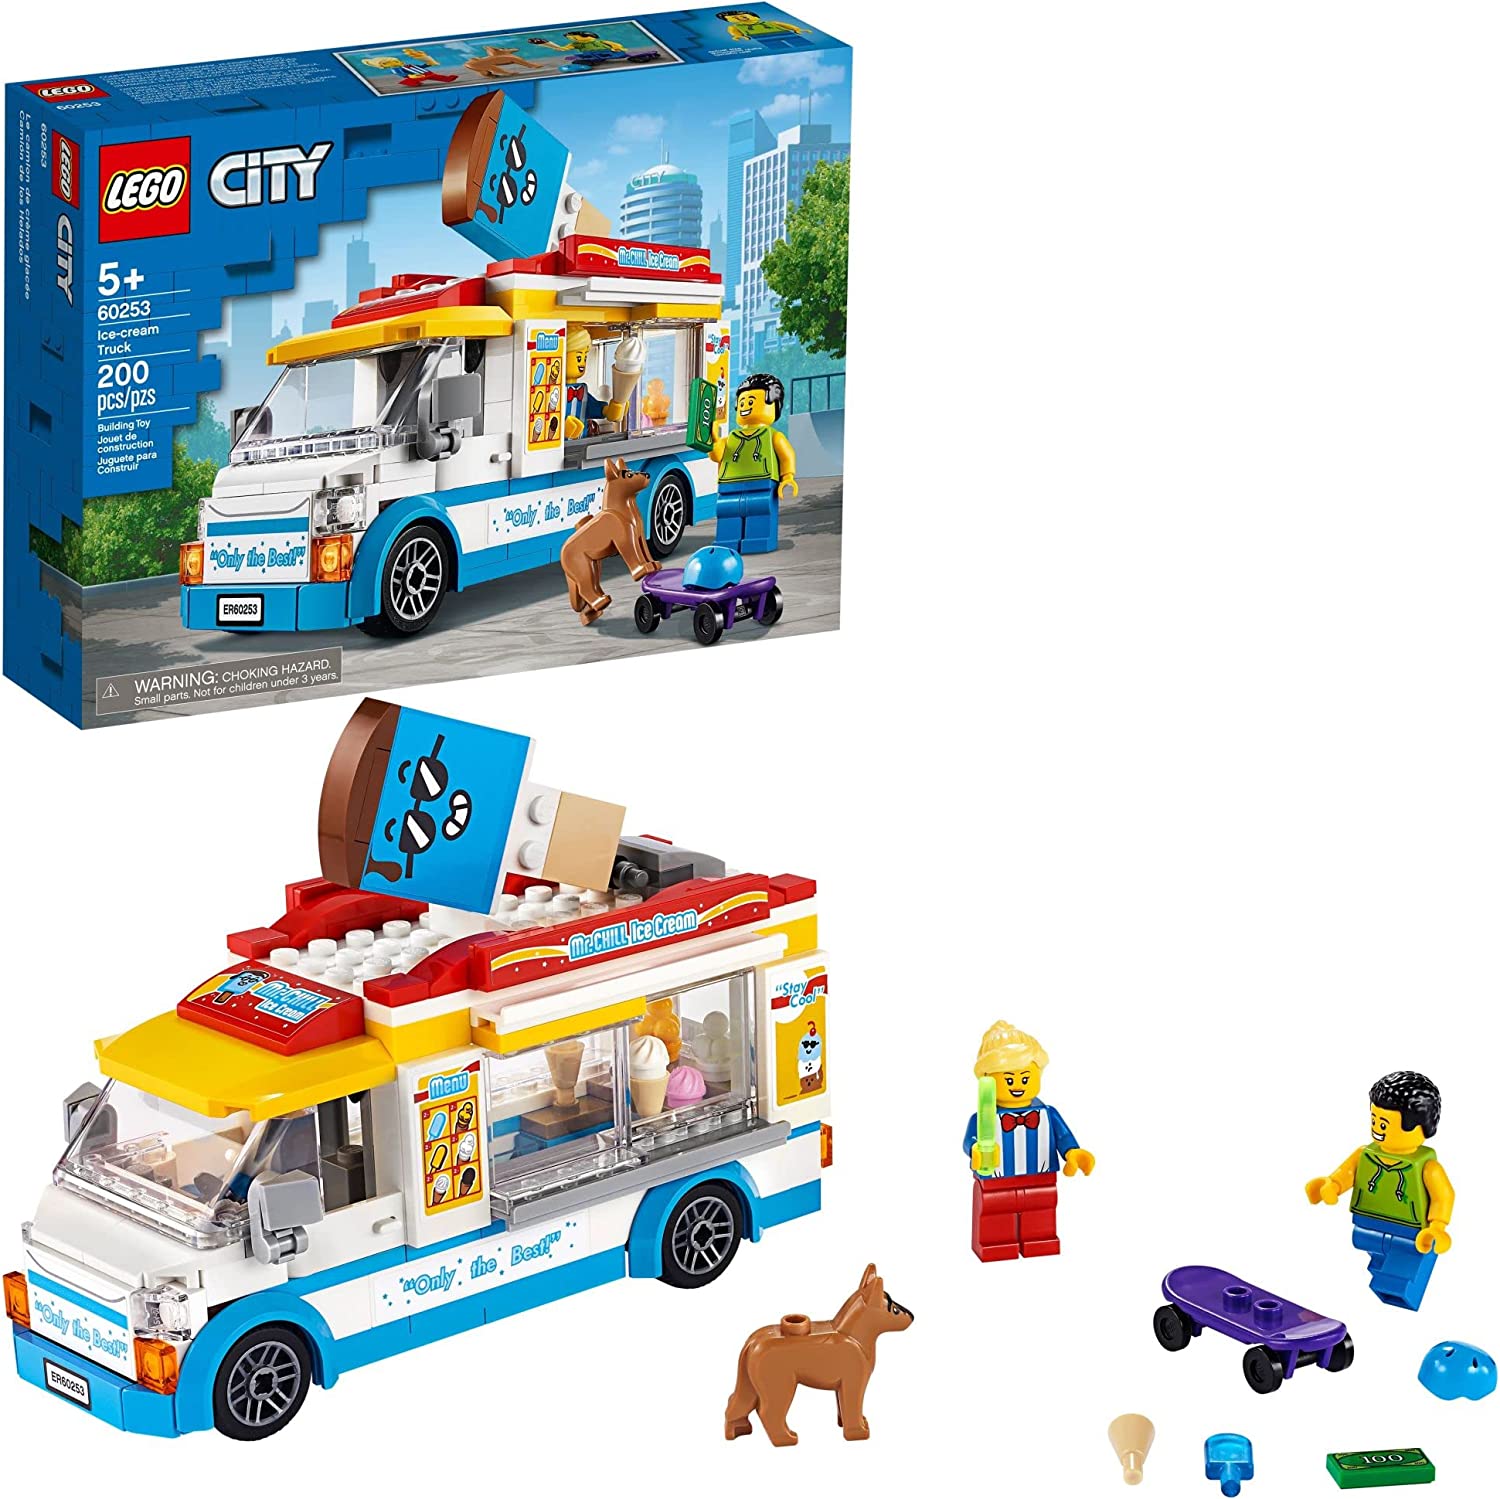 Lego City 60253 Camion De Helados 